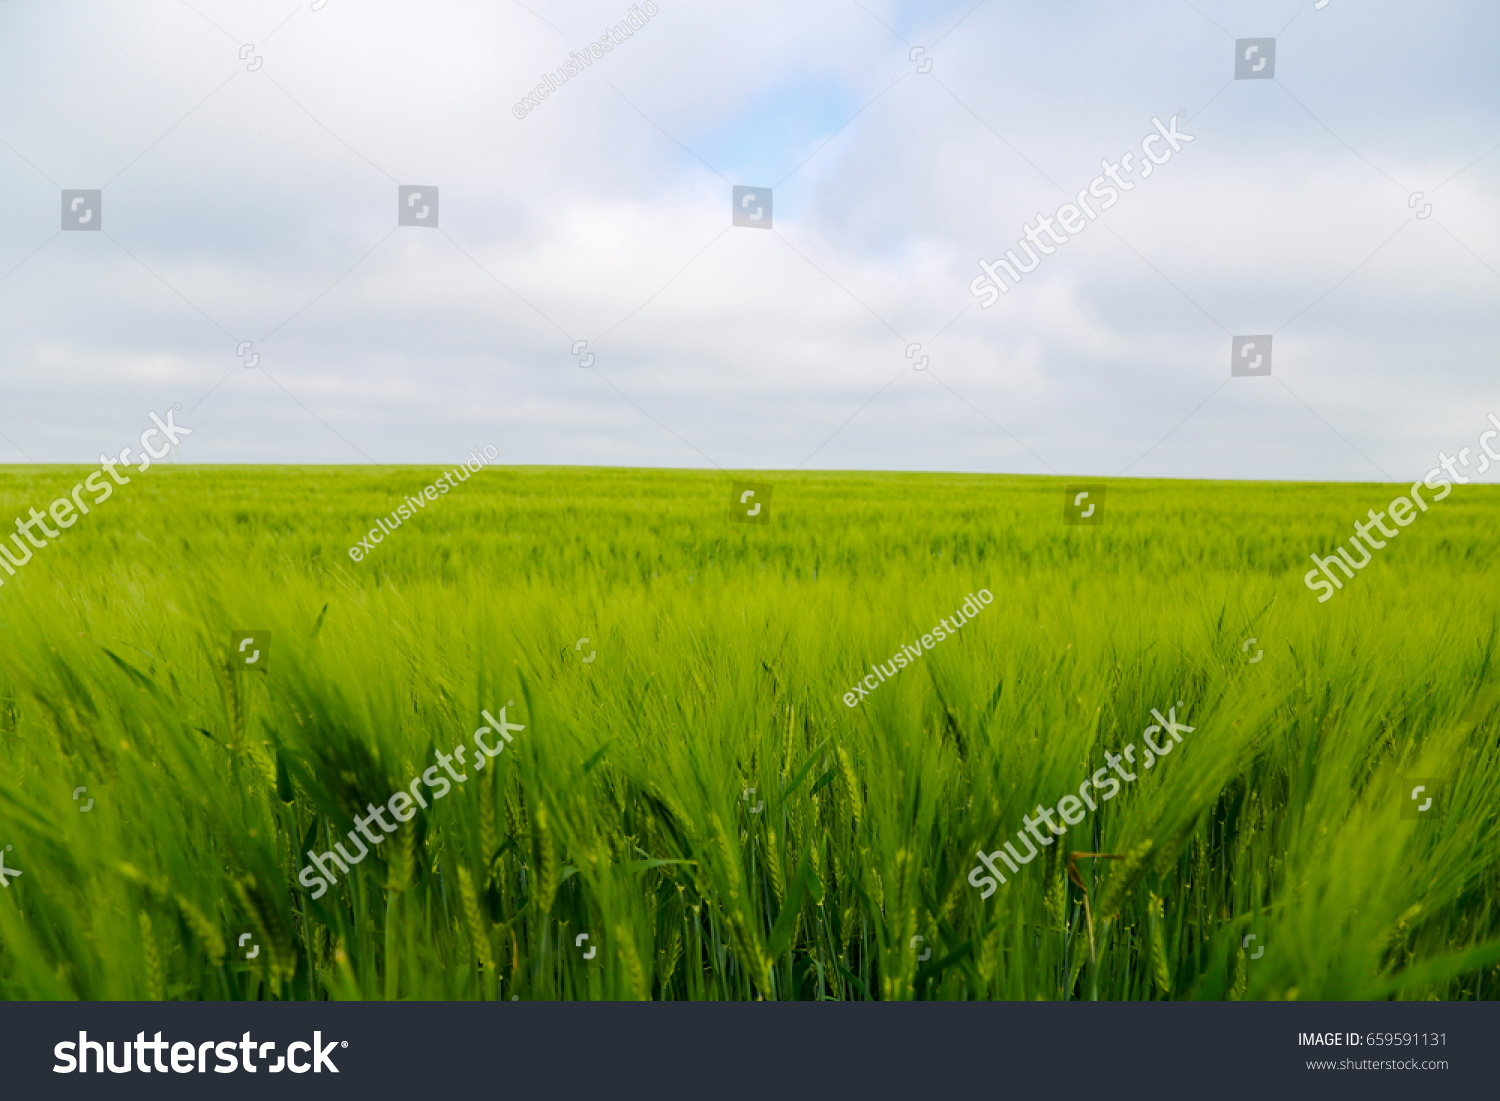 Green wheat ears in the field. #659591131